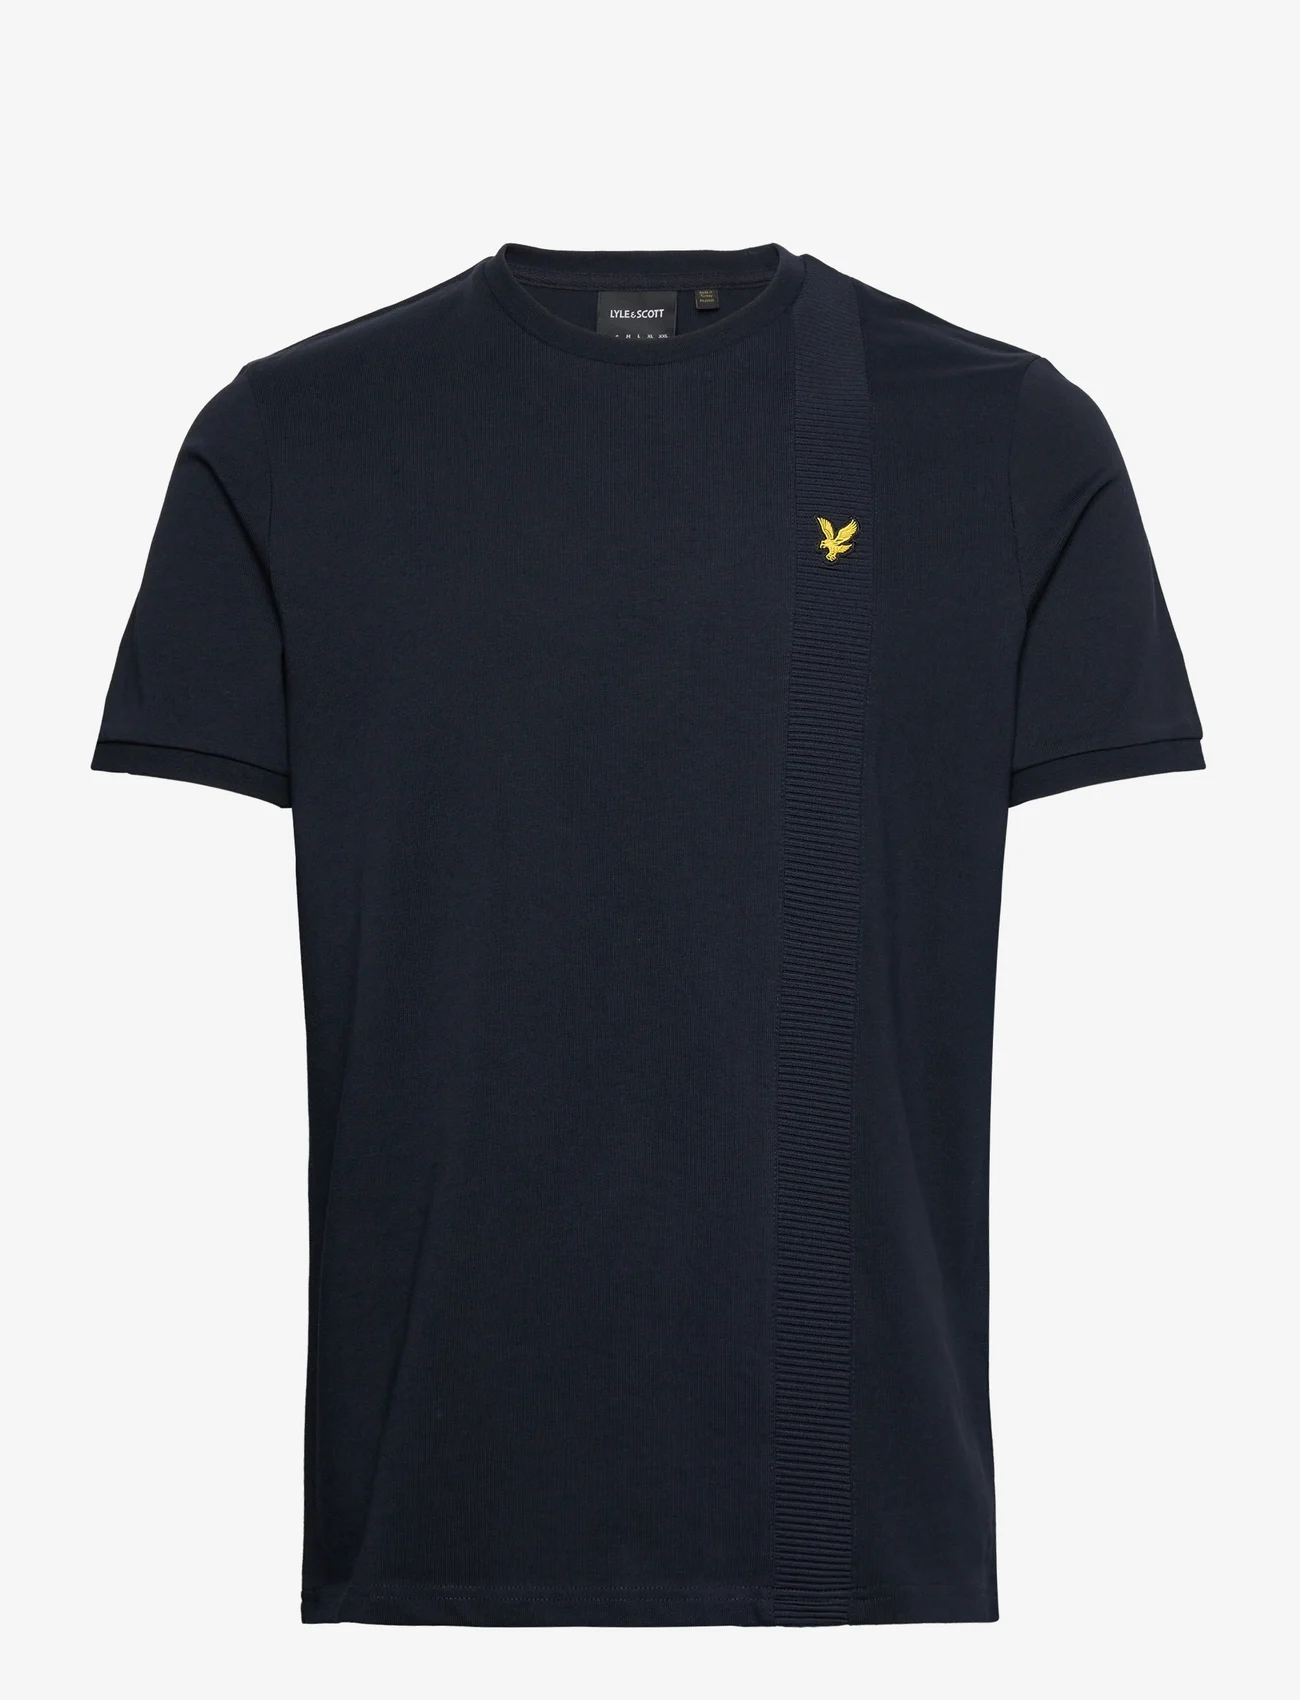 Lyle & Scott - Panelled Tshirt - basic t-shirts - dark navy - 0